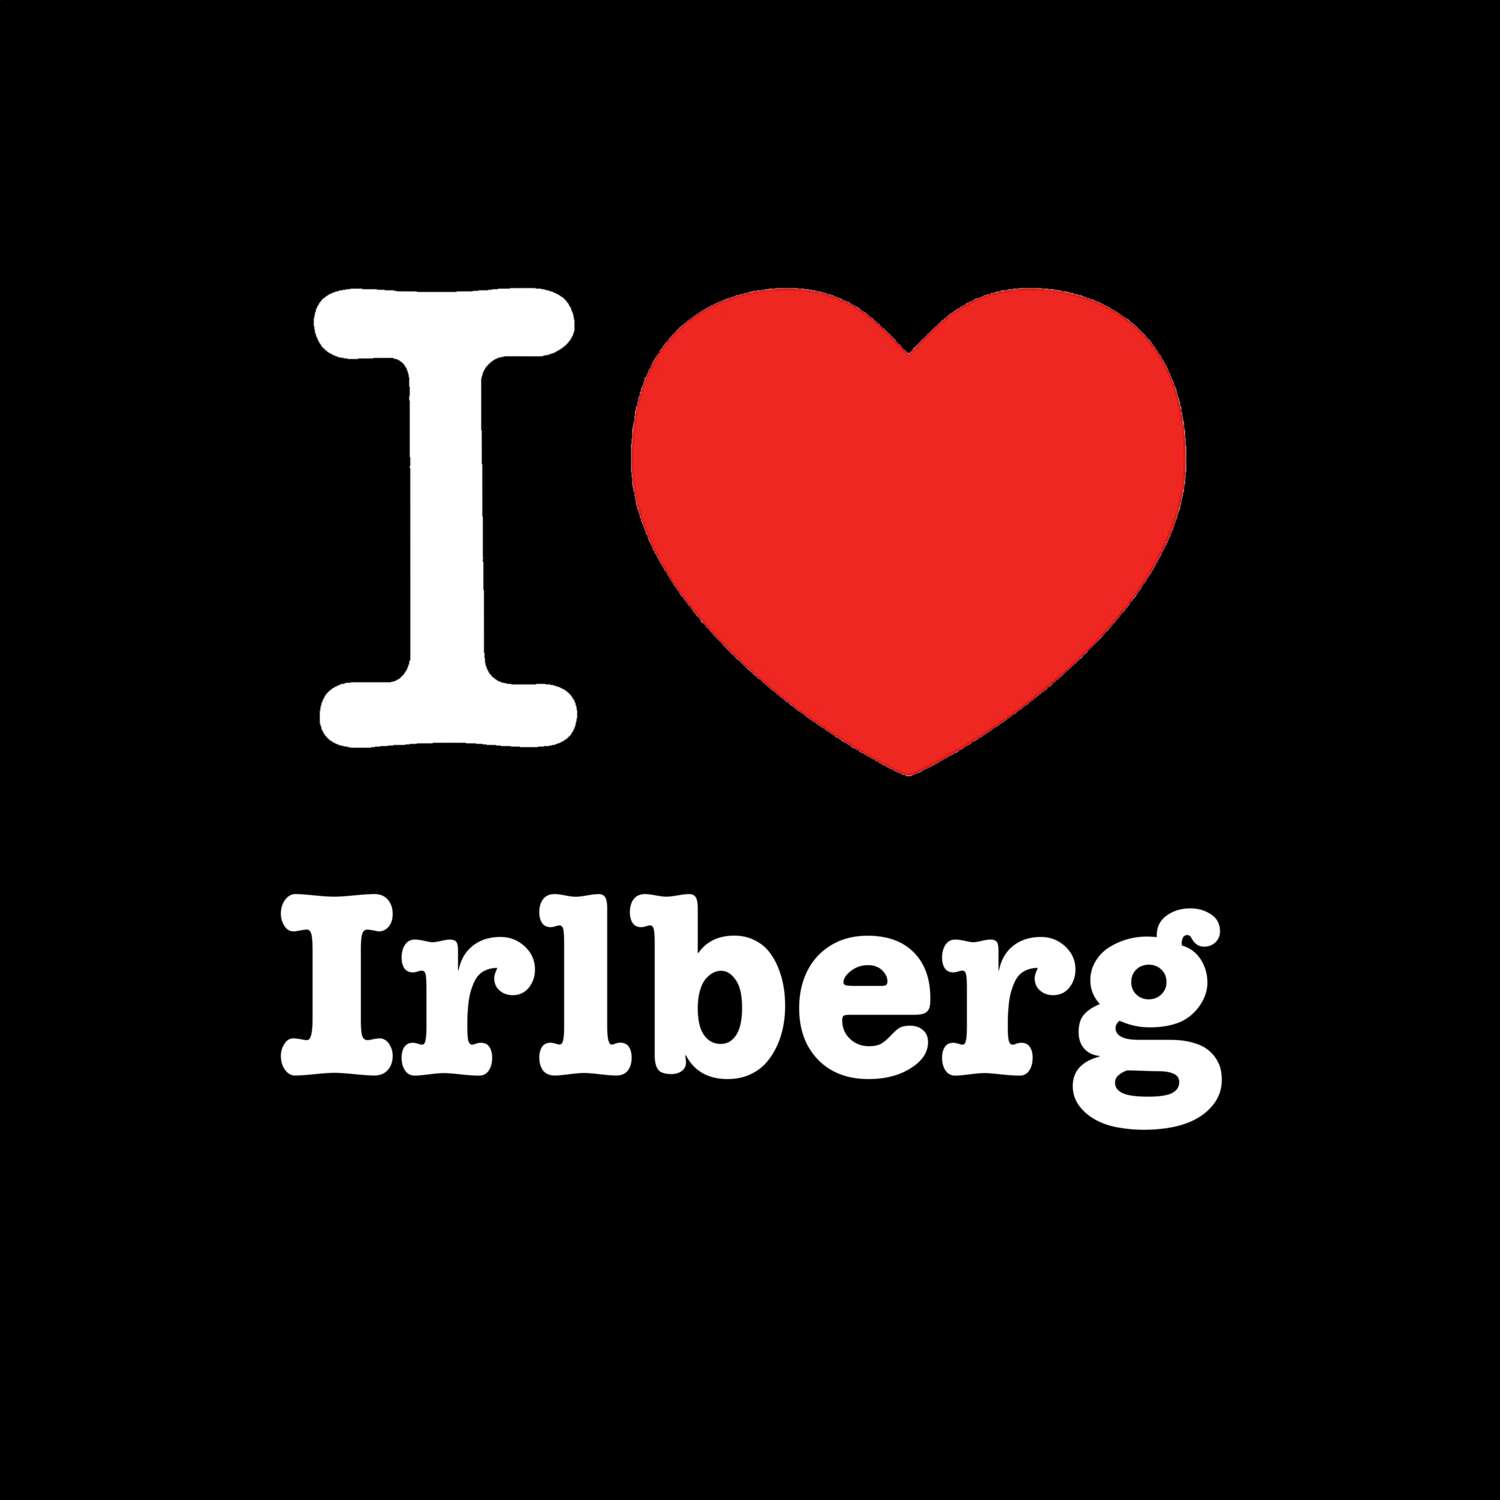 Irlberg T-Shirt »I love«